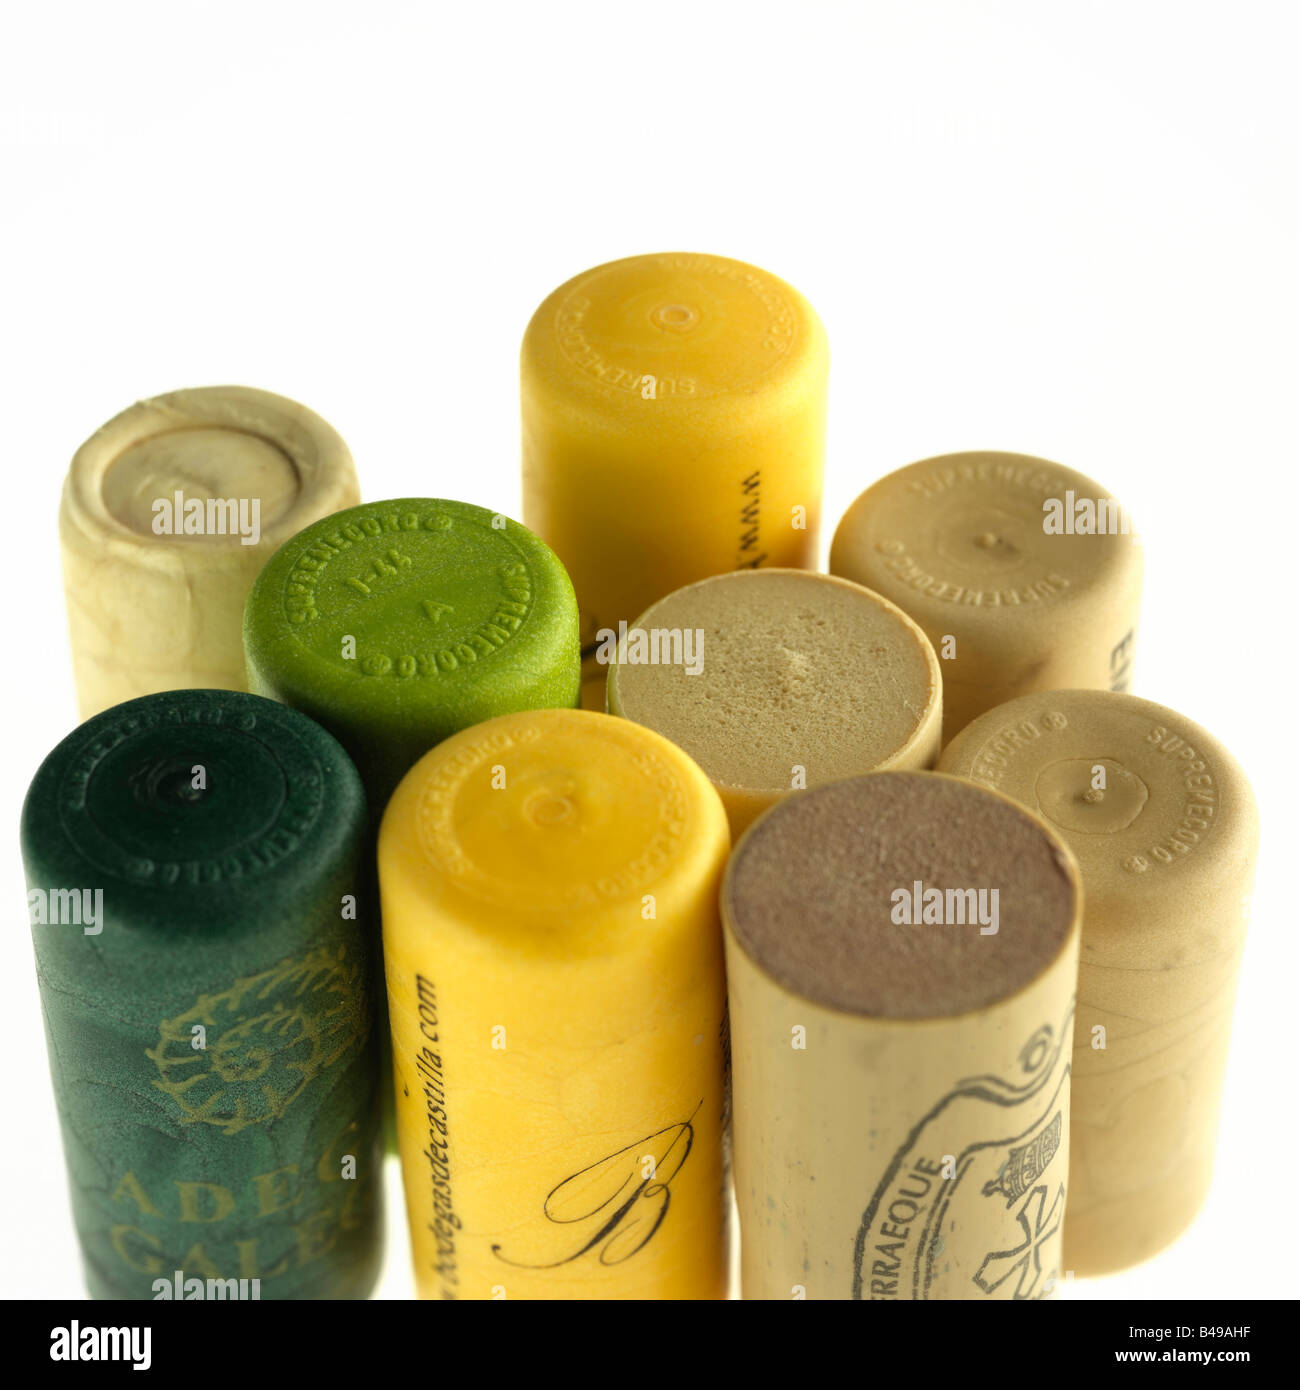 Tappi Di Plastica Per Bottiglie Di Vino Immagini e Fotos Stock - Alamy